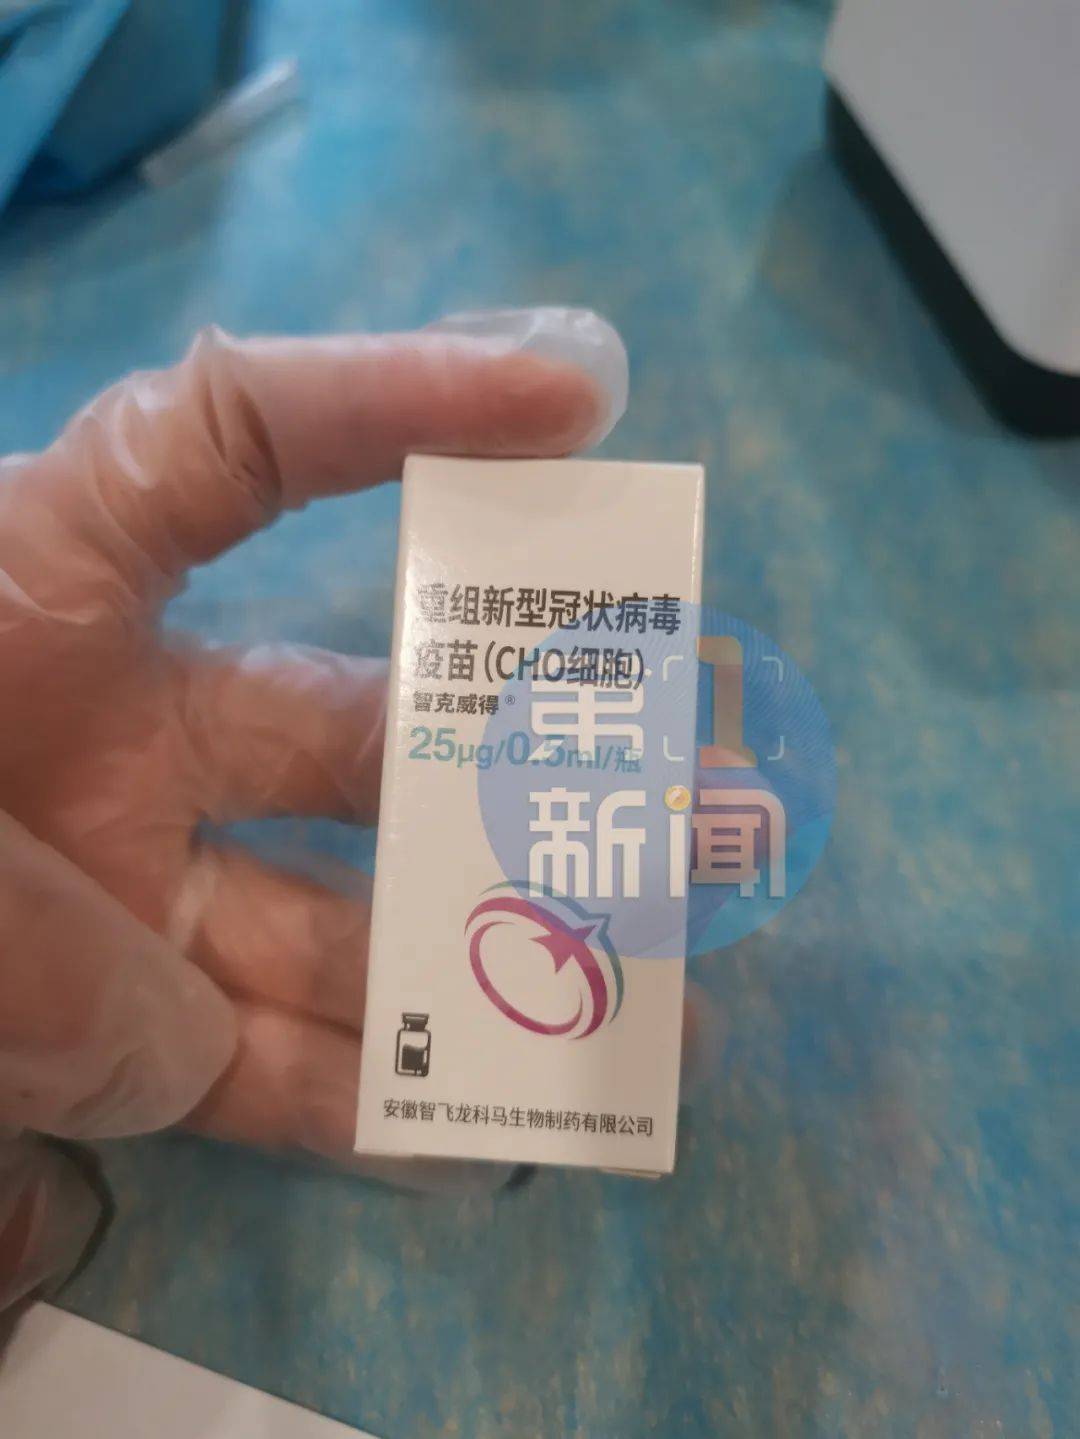 三种新冠疫苗的区别 中国三种新冠疫苗